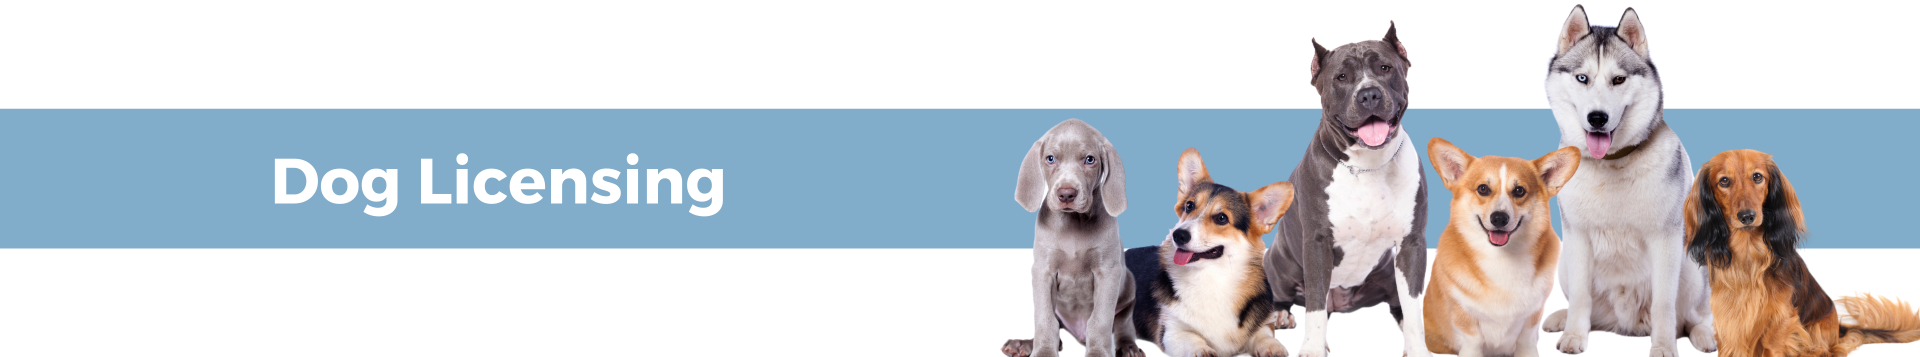 dog licensing banner